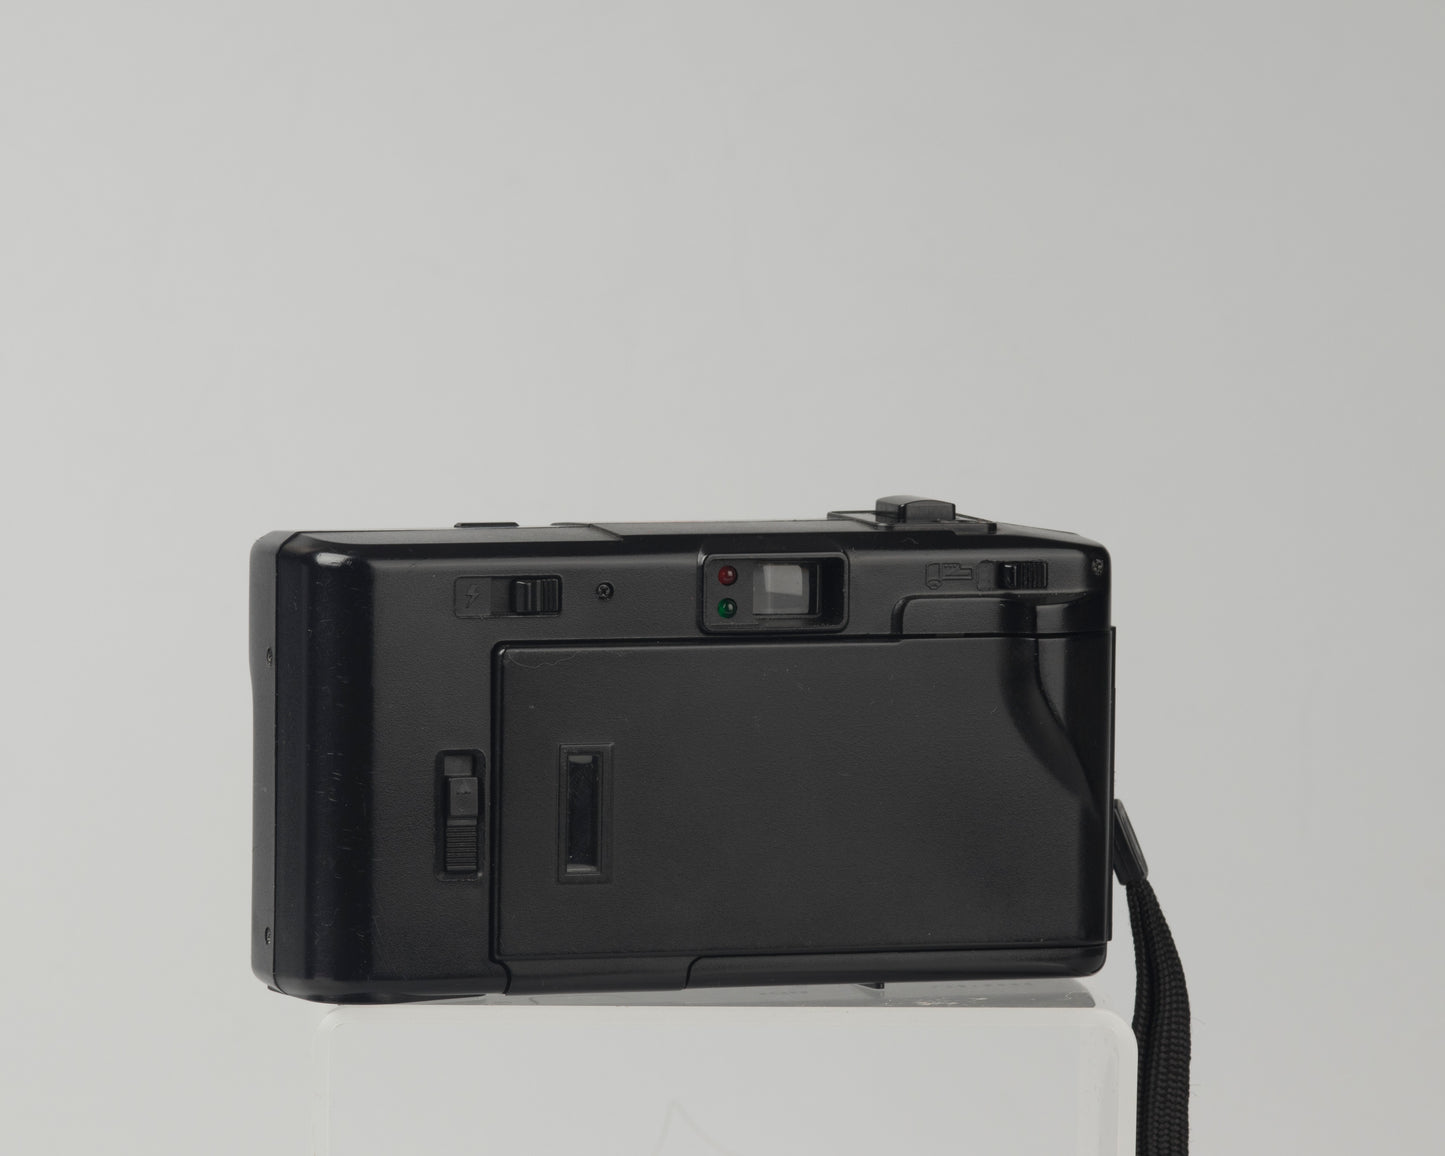 Vivitar PS20 35mm film camera